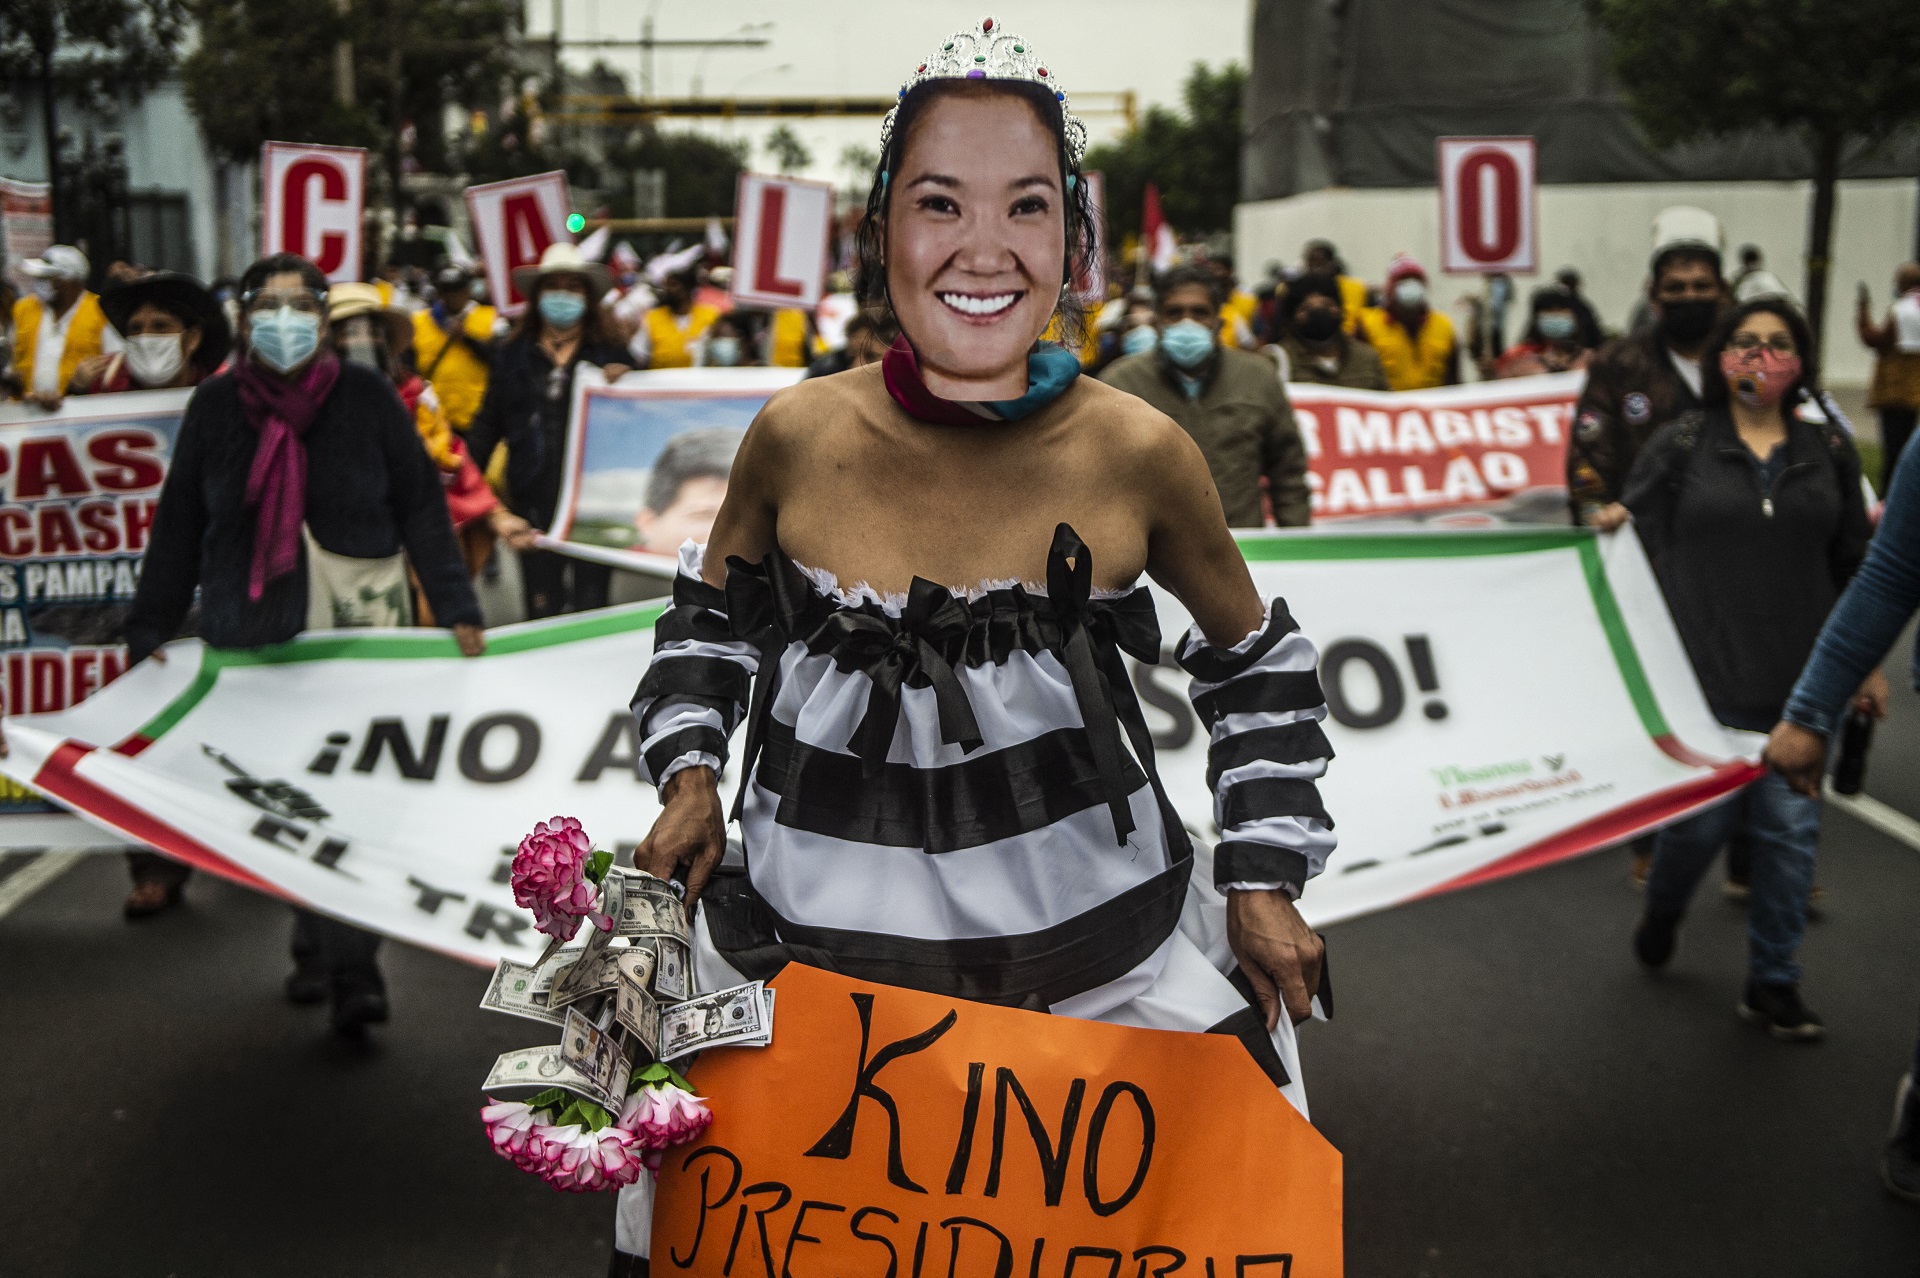 Varias mujeres lucían vestidos de quinceañeras con máscaras de Fujimori, en alusión a las tres derrotas de Fujimori en las urnas (2011, 2016 y 2021)